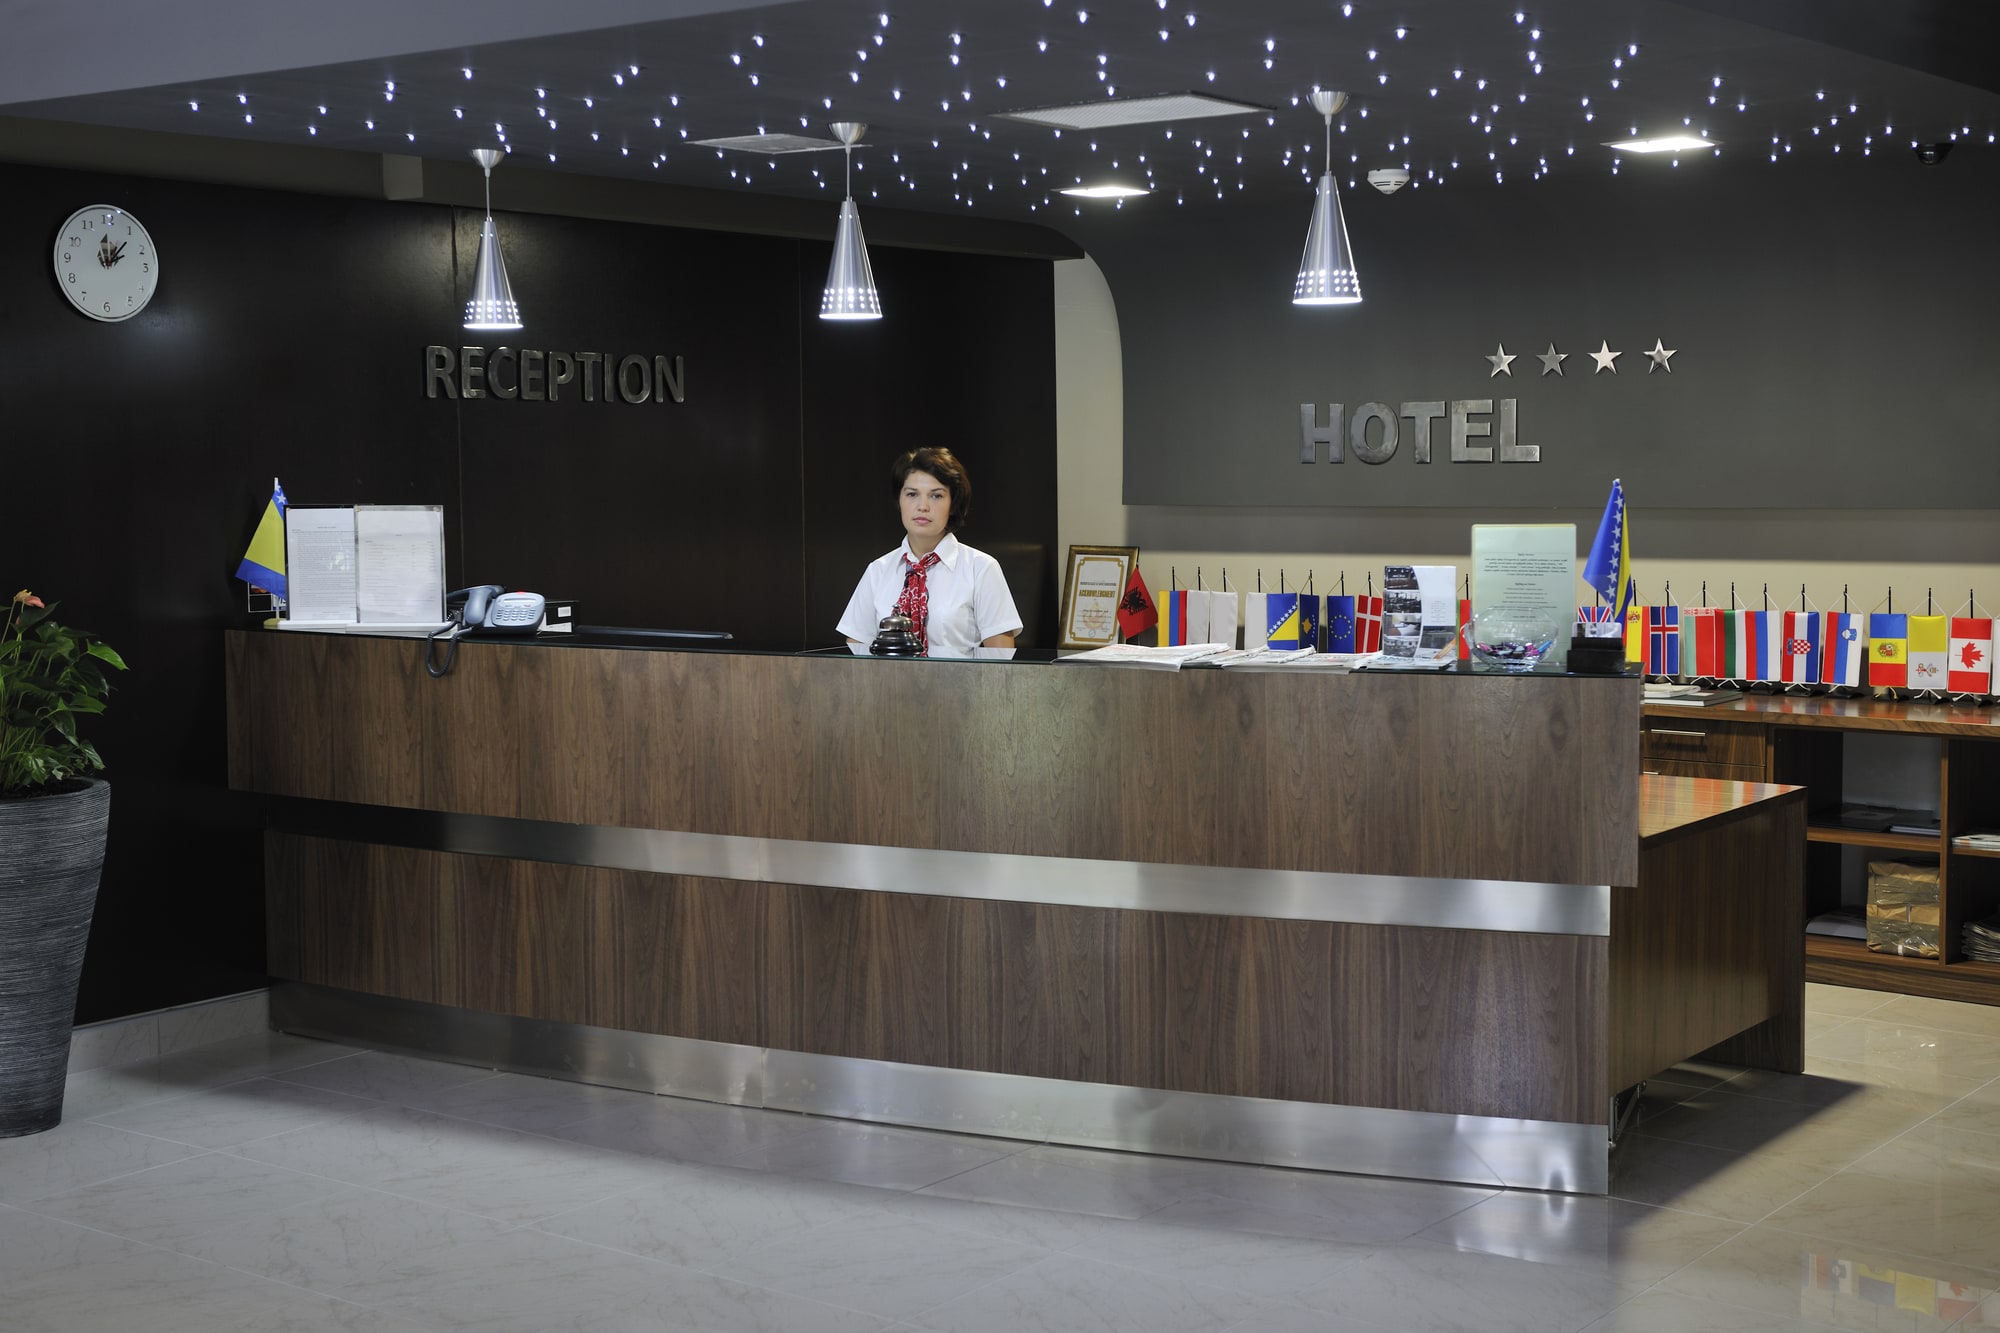 software solutions | Gartner names roomMaster a leader in Hotel Management Software